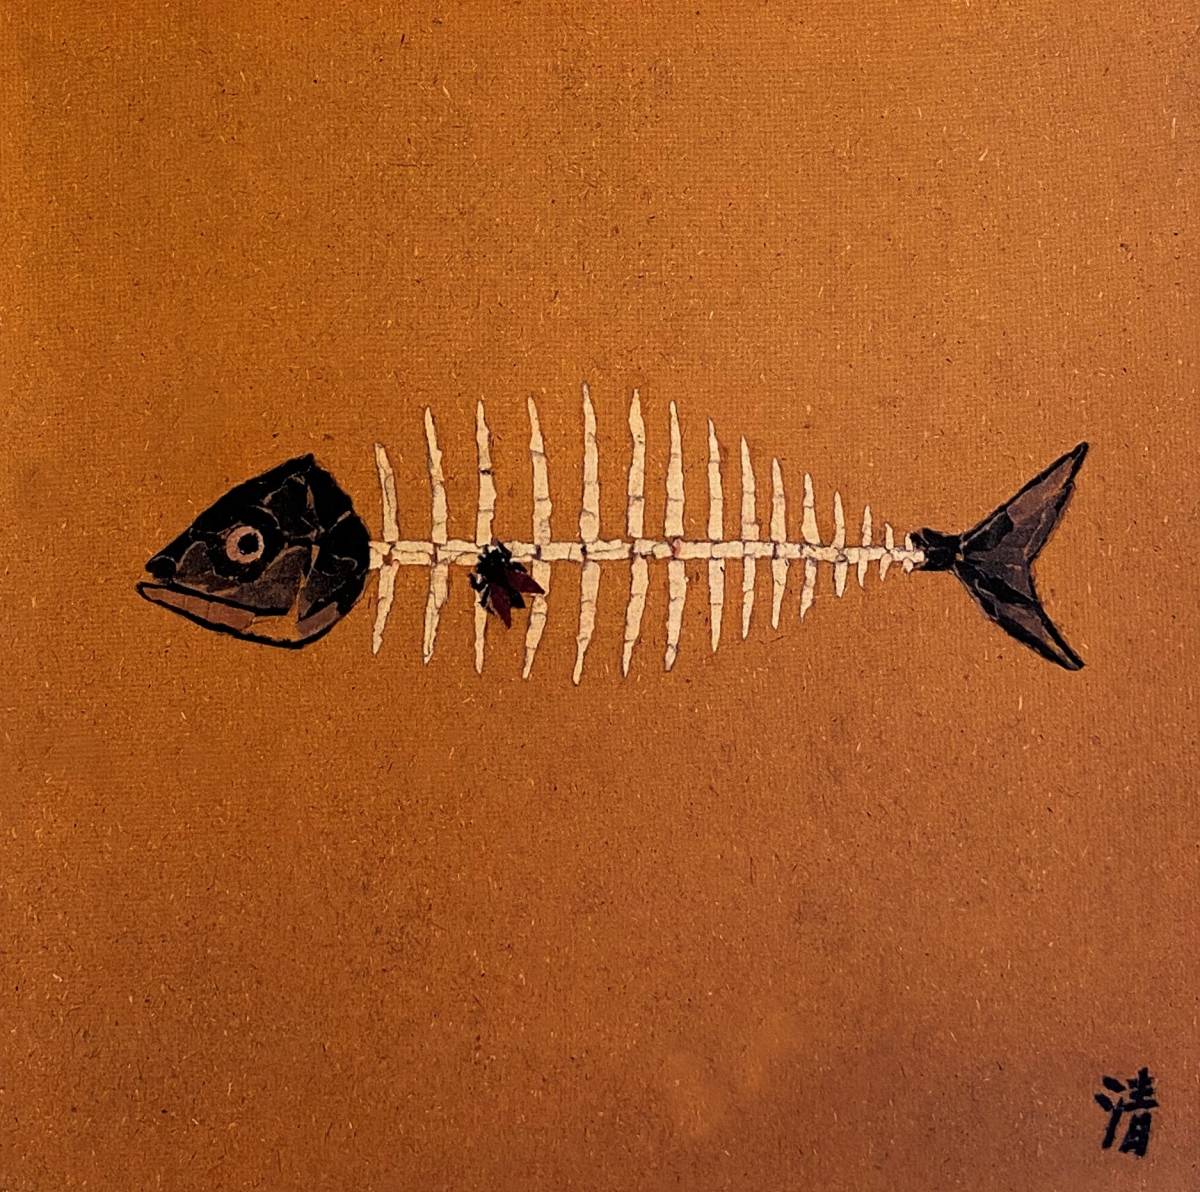 Киёси Ямасита, (Полет на рыбной кости), редкие картины из художественных книг, Роскошная новинка в рамке, Хорошее состояние, бесплатная доставка, произведение искусства, рисование, другие